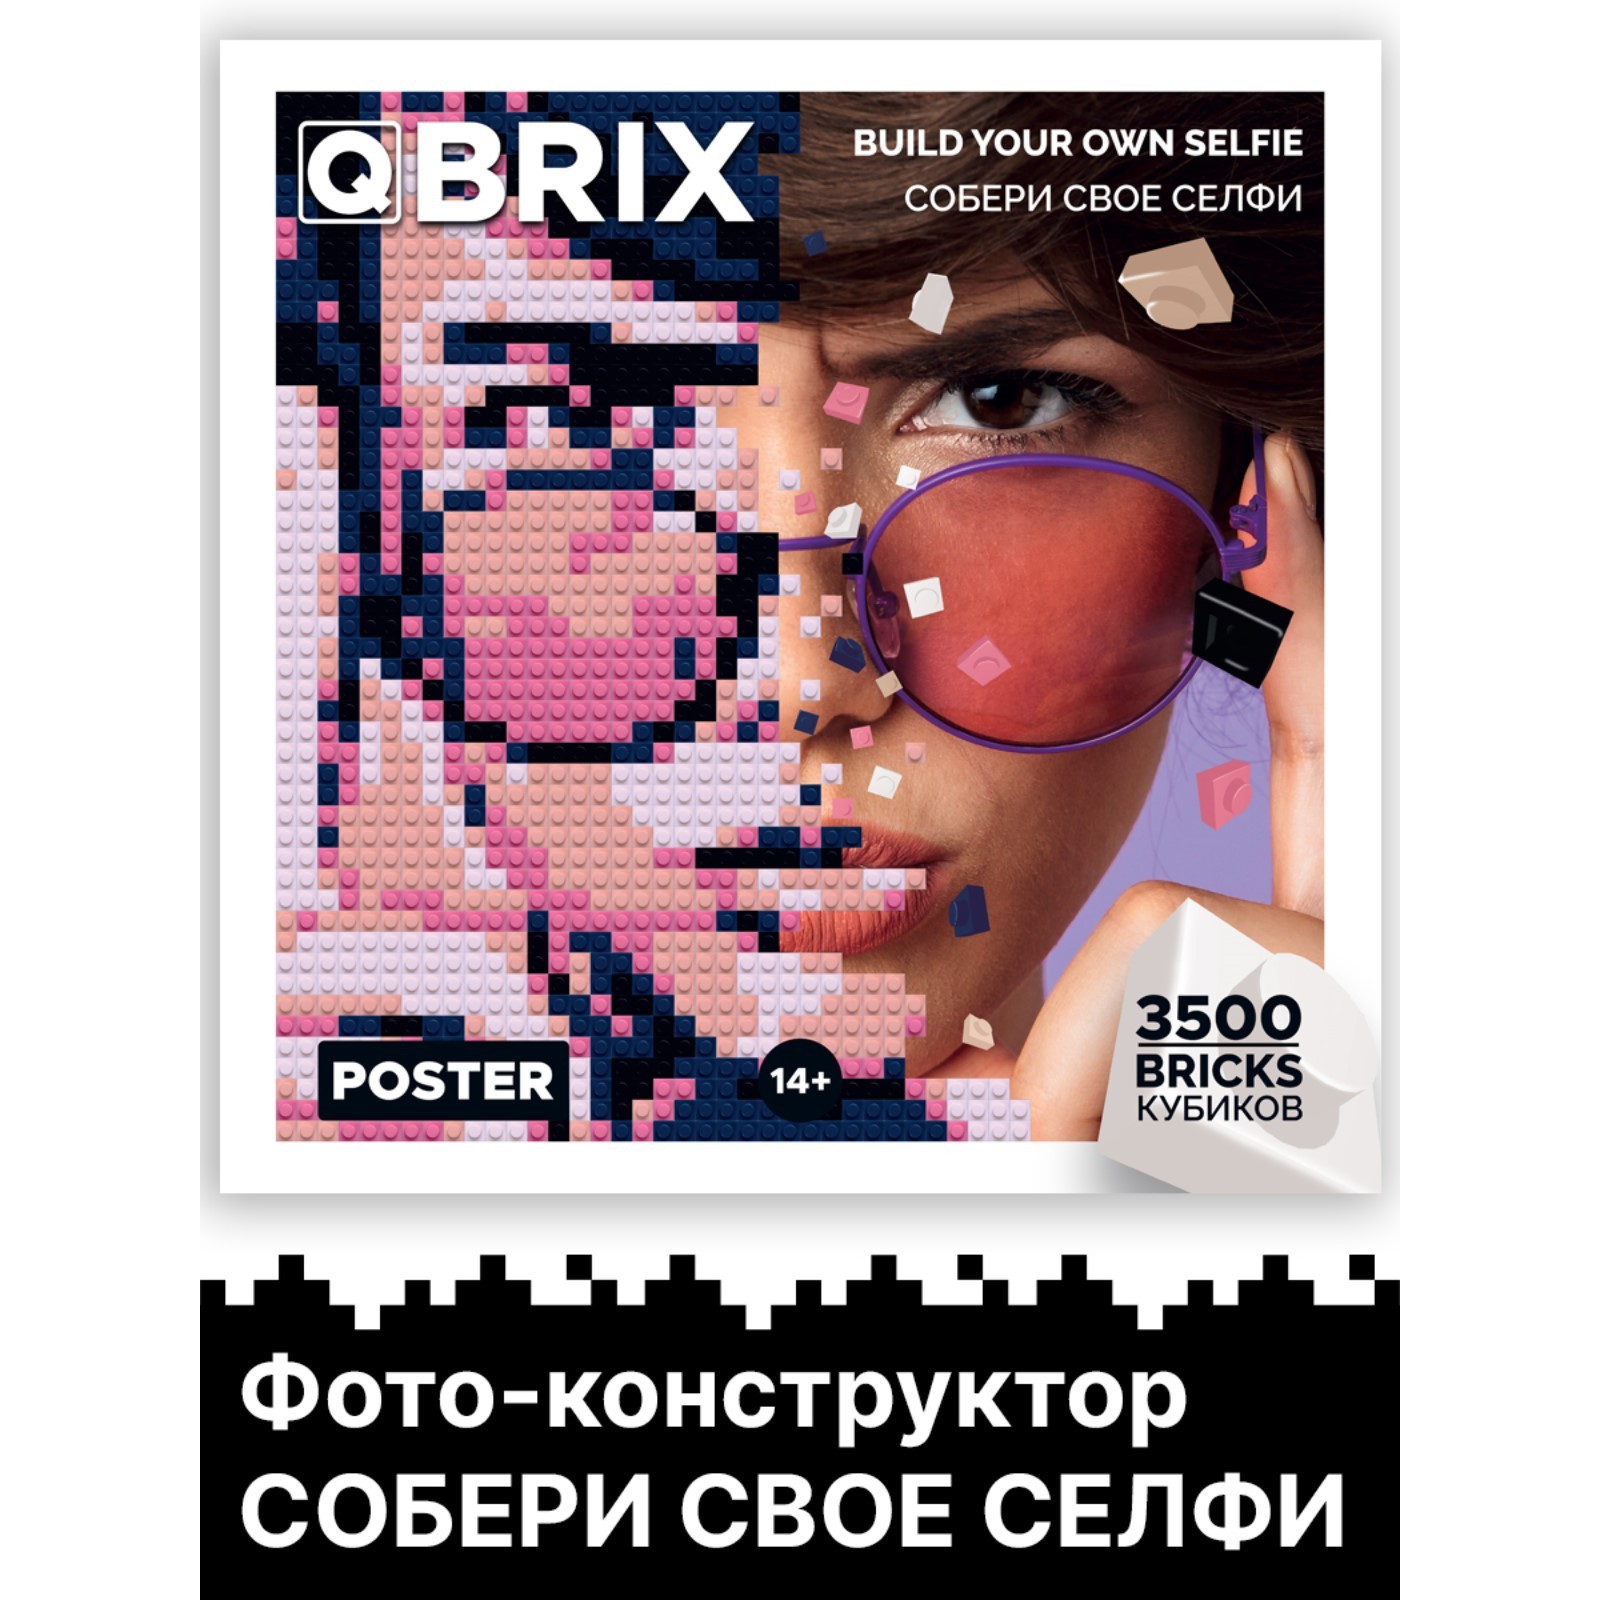 Фото-конструктор  Qbrix Poster